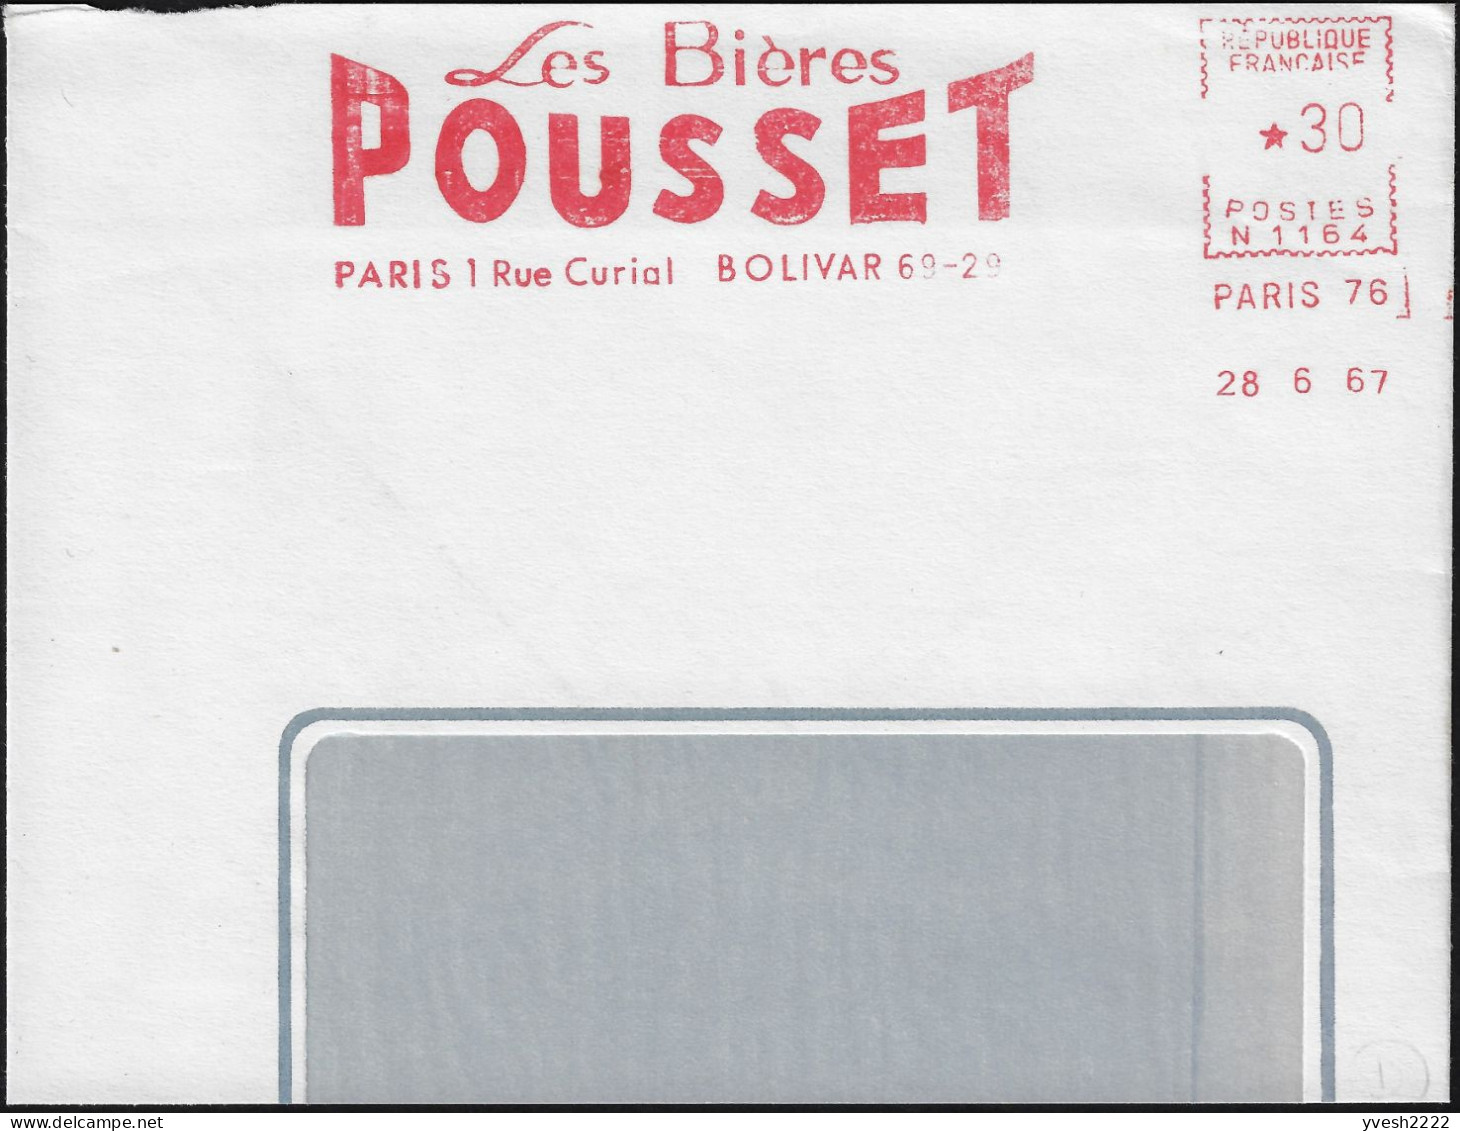 France 1967. Empreinte De Machine à Affranchir, EMA. Les Bières Pousset, Paris 1. Bolivar 69-29 - Biere